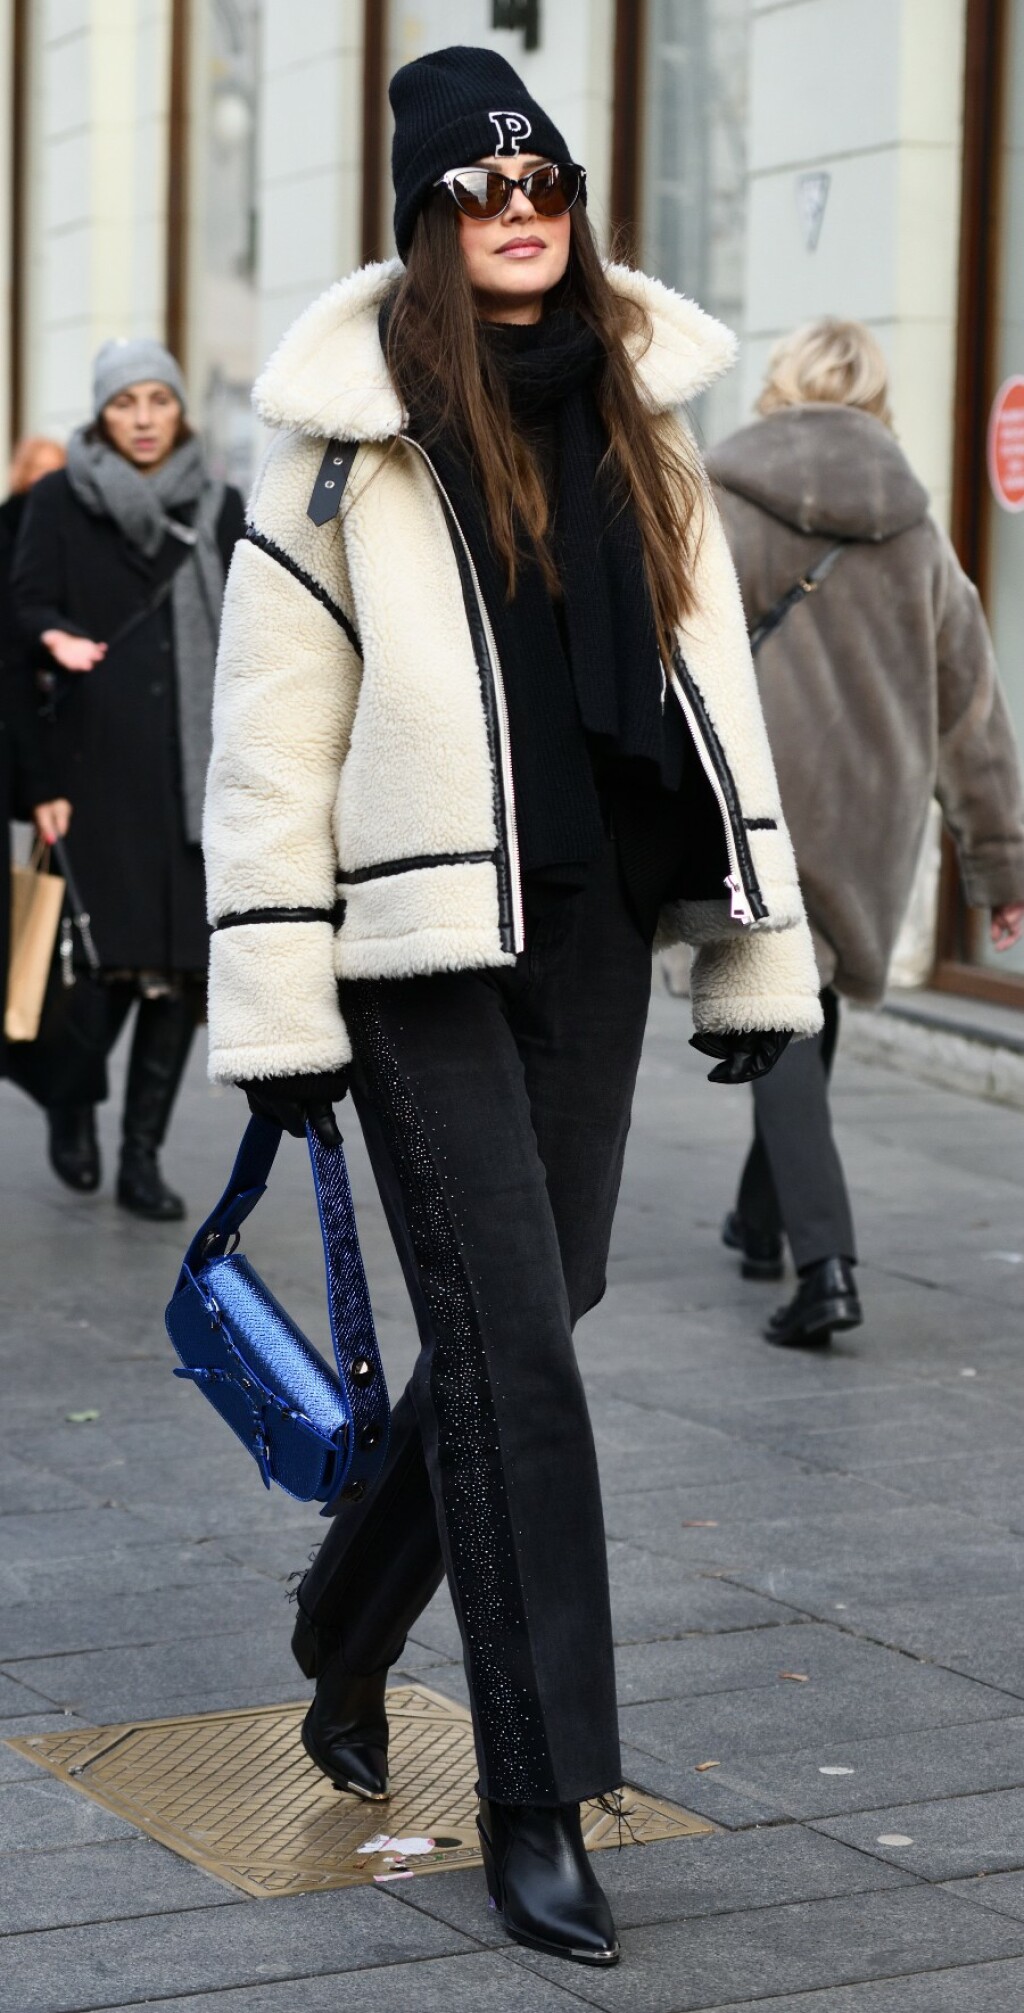 Ljepotica sa zagrebačke špice u jakni brenda Zara